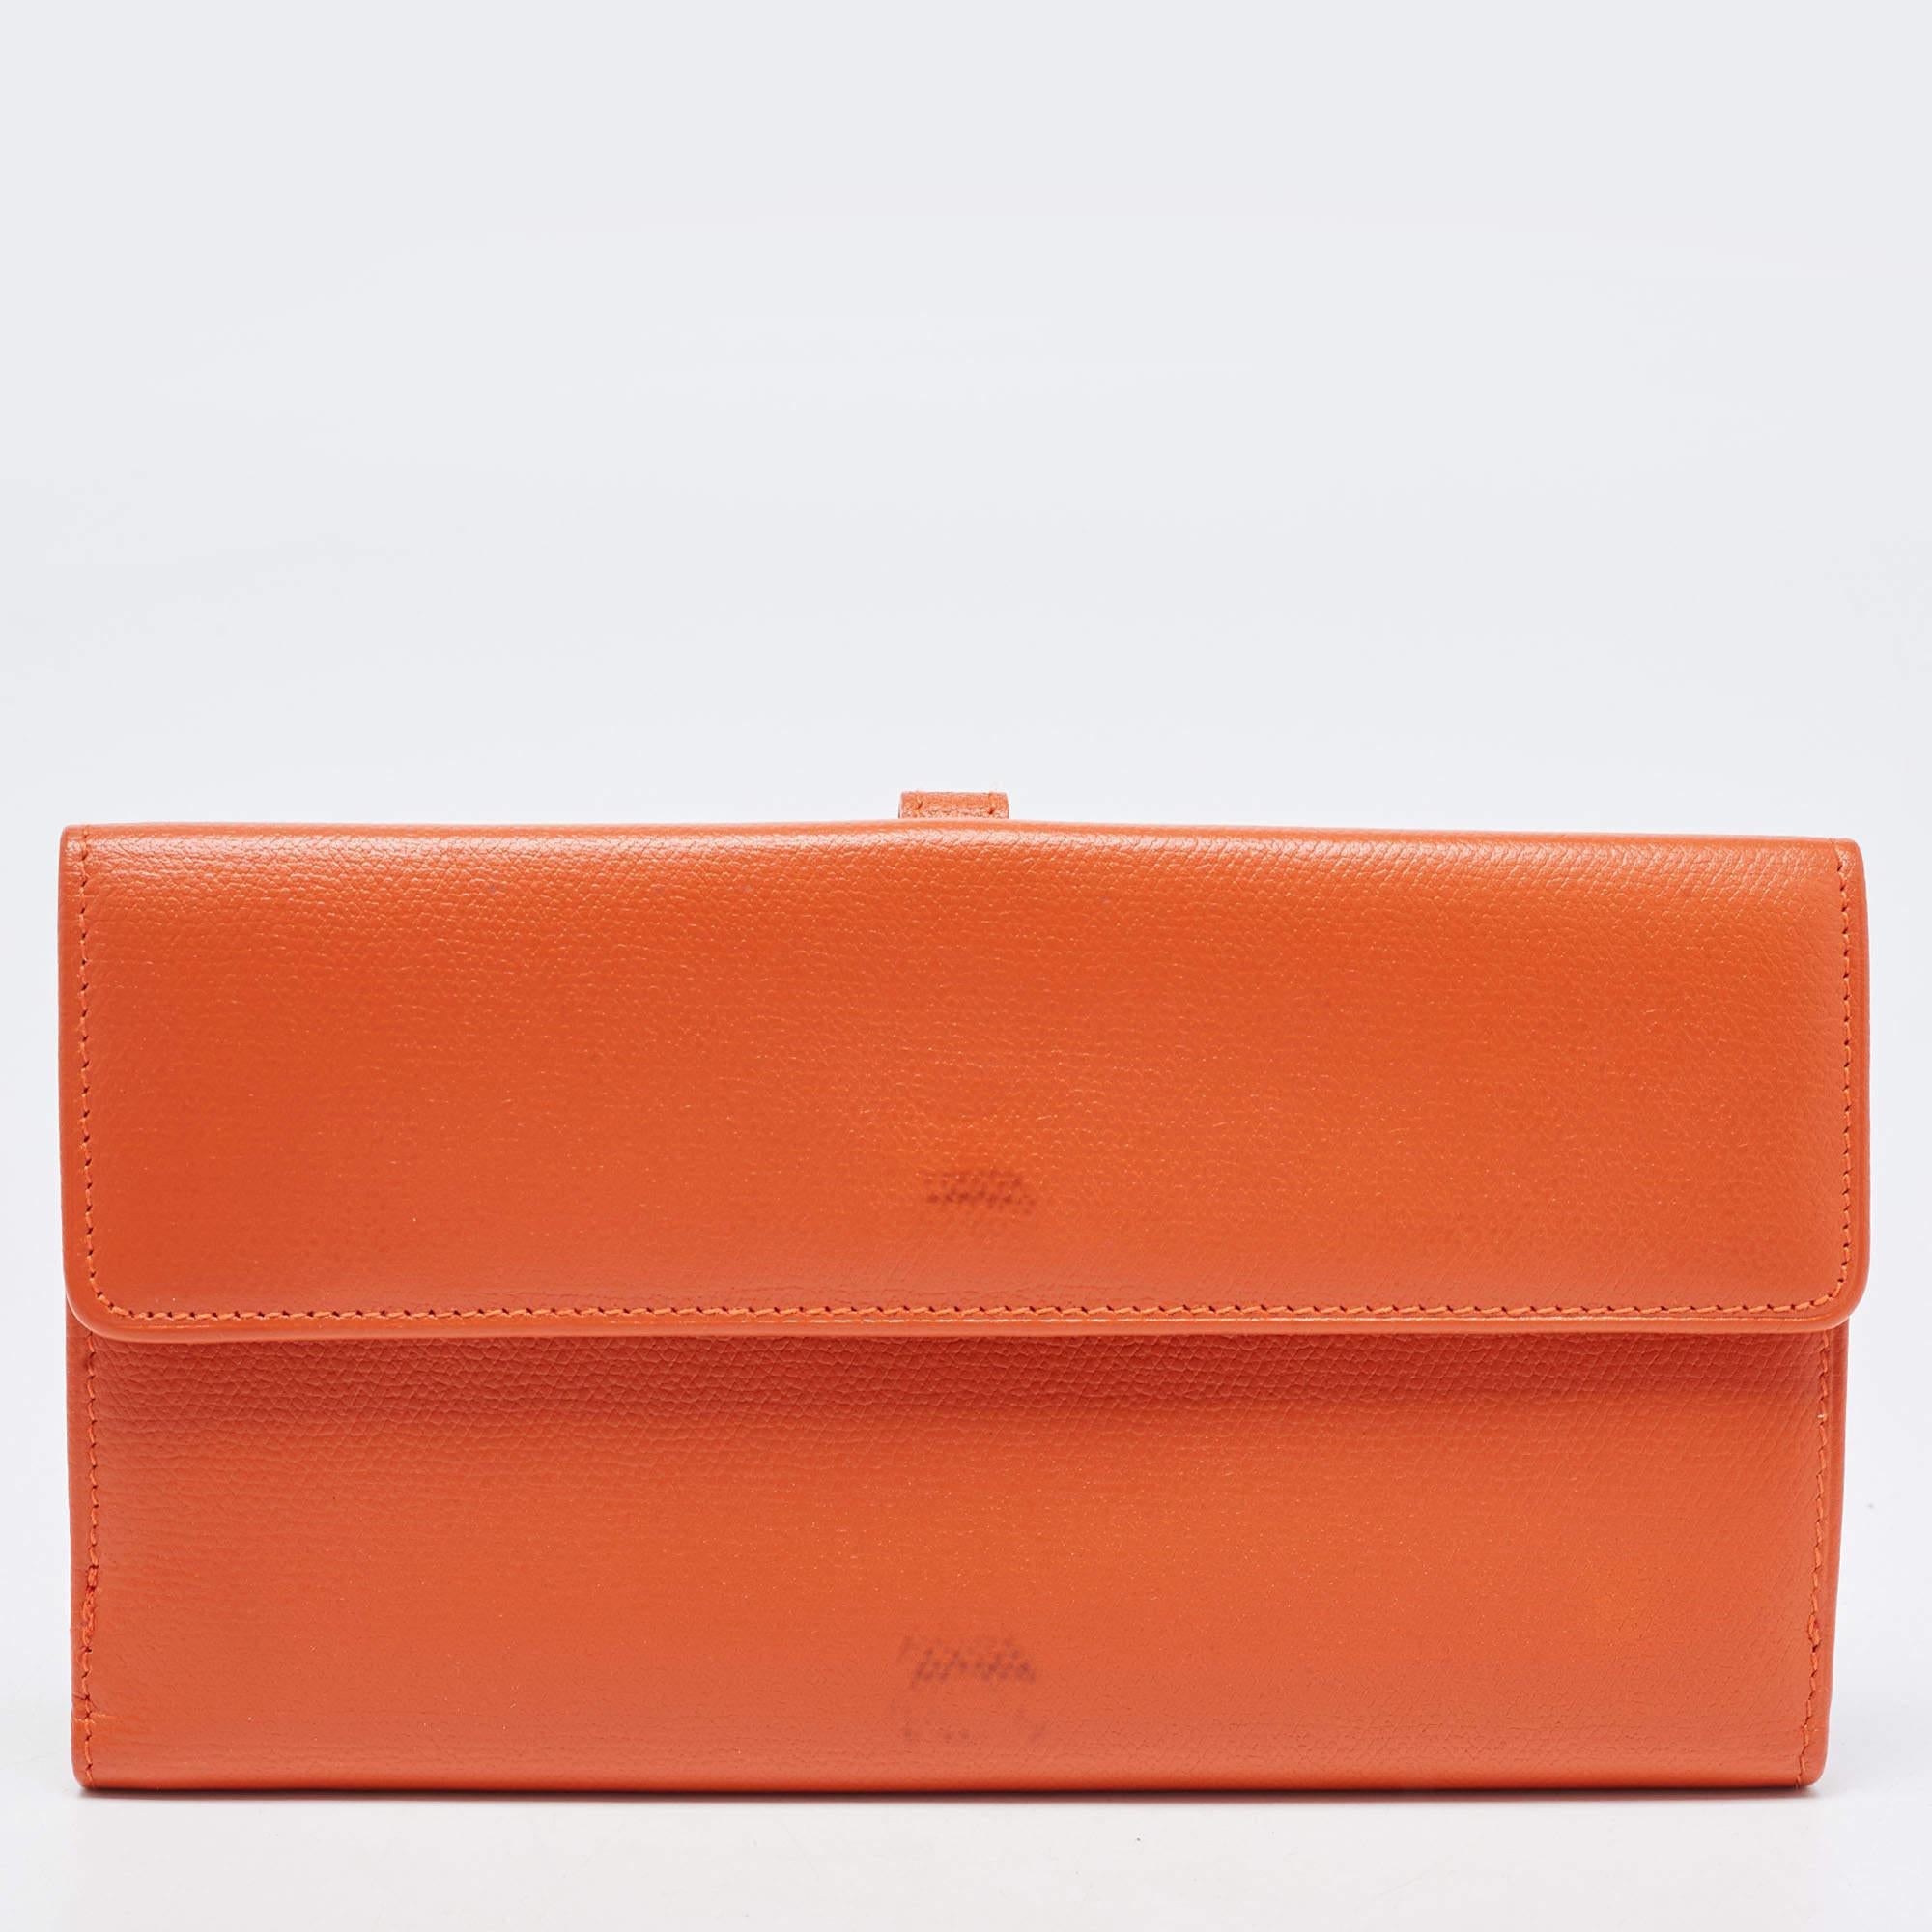 Diese lange Chanel Geldbörse ist praktisch für den täglichen Gebrauch. Das aus orangefarbenem Leder gefertigte Portemonnaie hat einen Faltverschluss, der sich öffnen lässt, um Steckfächer und mehrere Kartenfächer freizugeben, in denen Sie Ihr